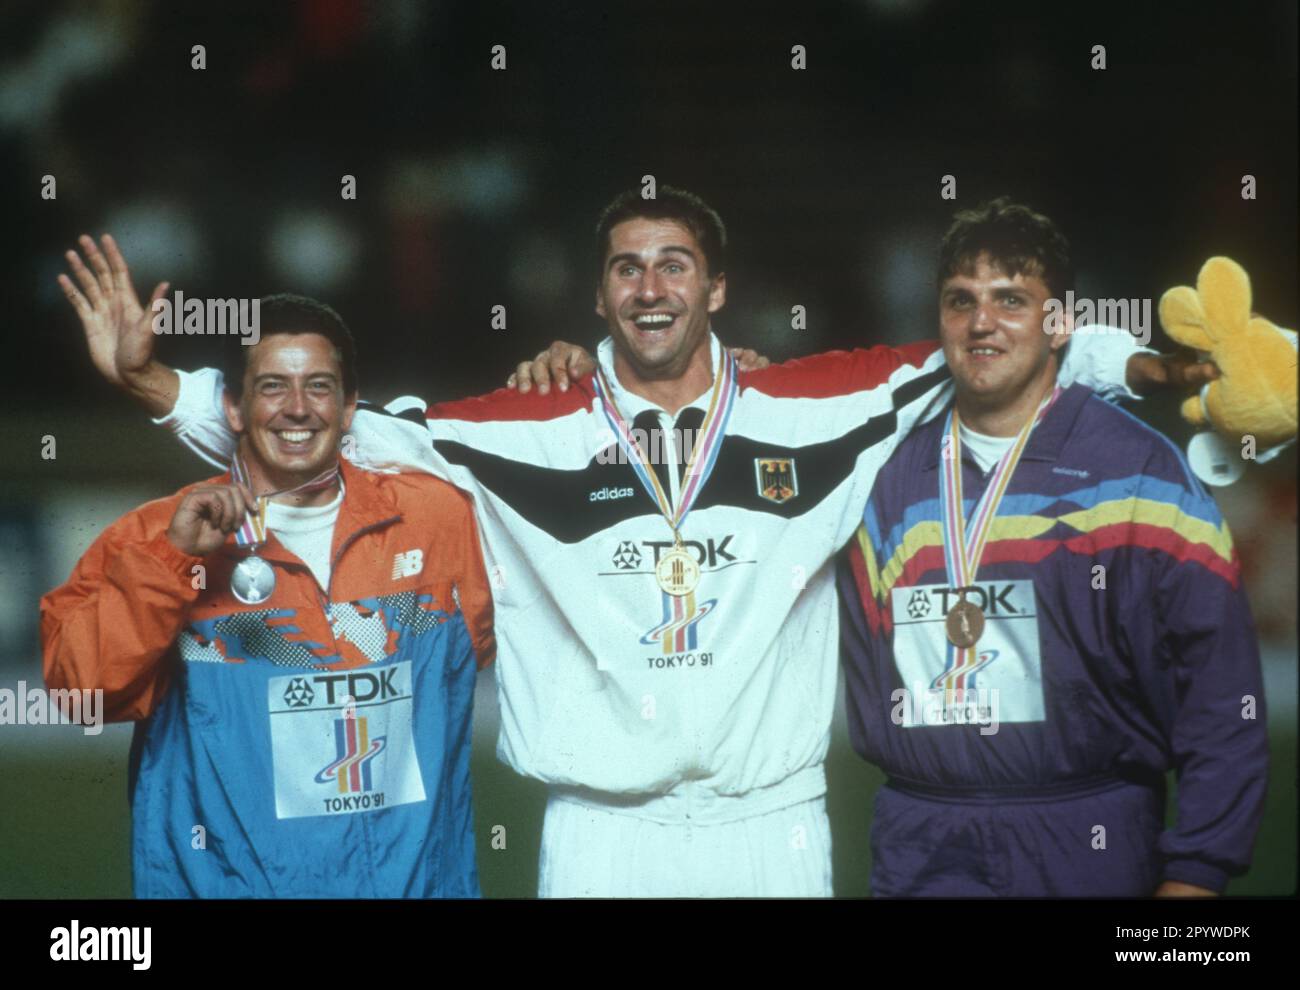 Leichtathletik-Weltmeisterschaft 1991 in Tokio. Preisverleihung: Lars Riedel (Deut./Center) überreicht seine Goldmedaille. Links: Erik de Bruin (NED/Silver). Rechts: Attila Horváth (HUN/Bronze). [Maschinelle Übersetzung] Stockfoto